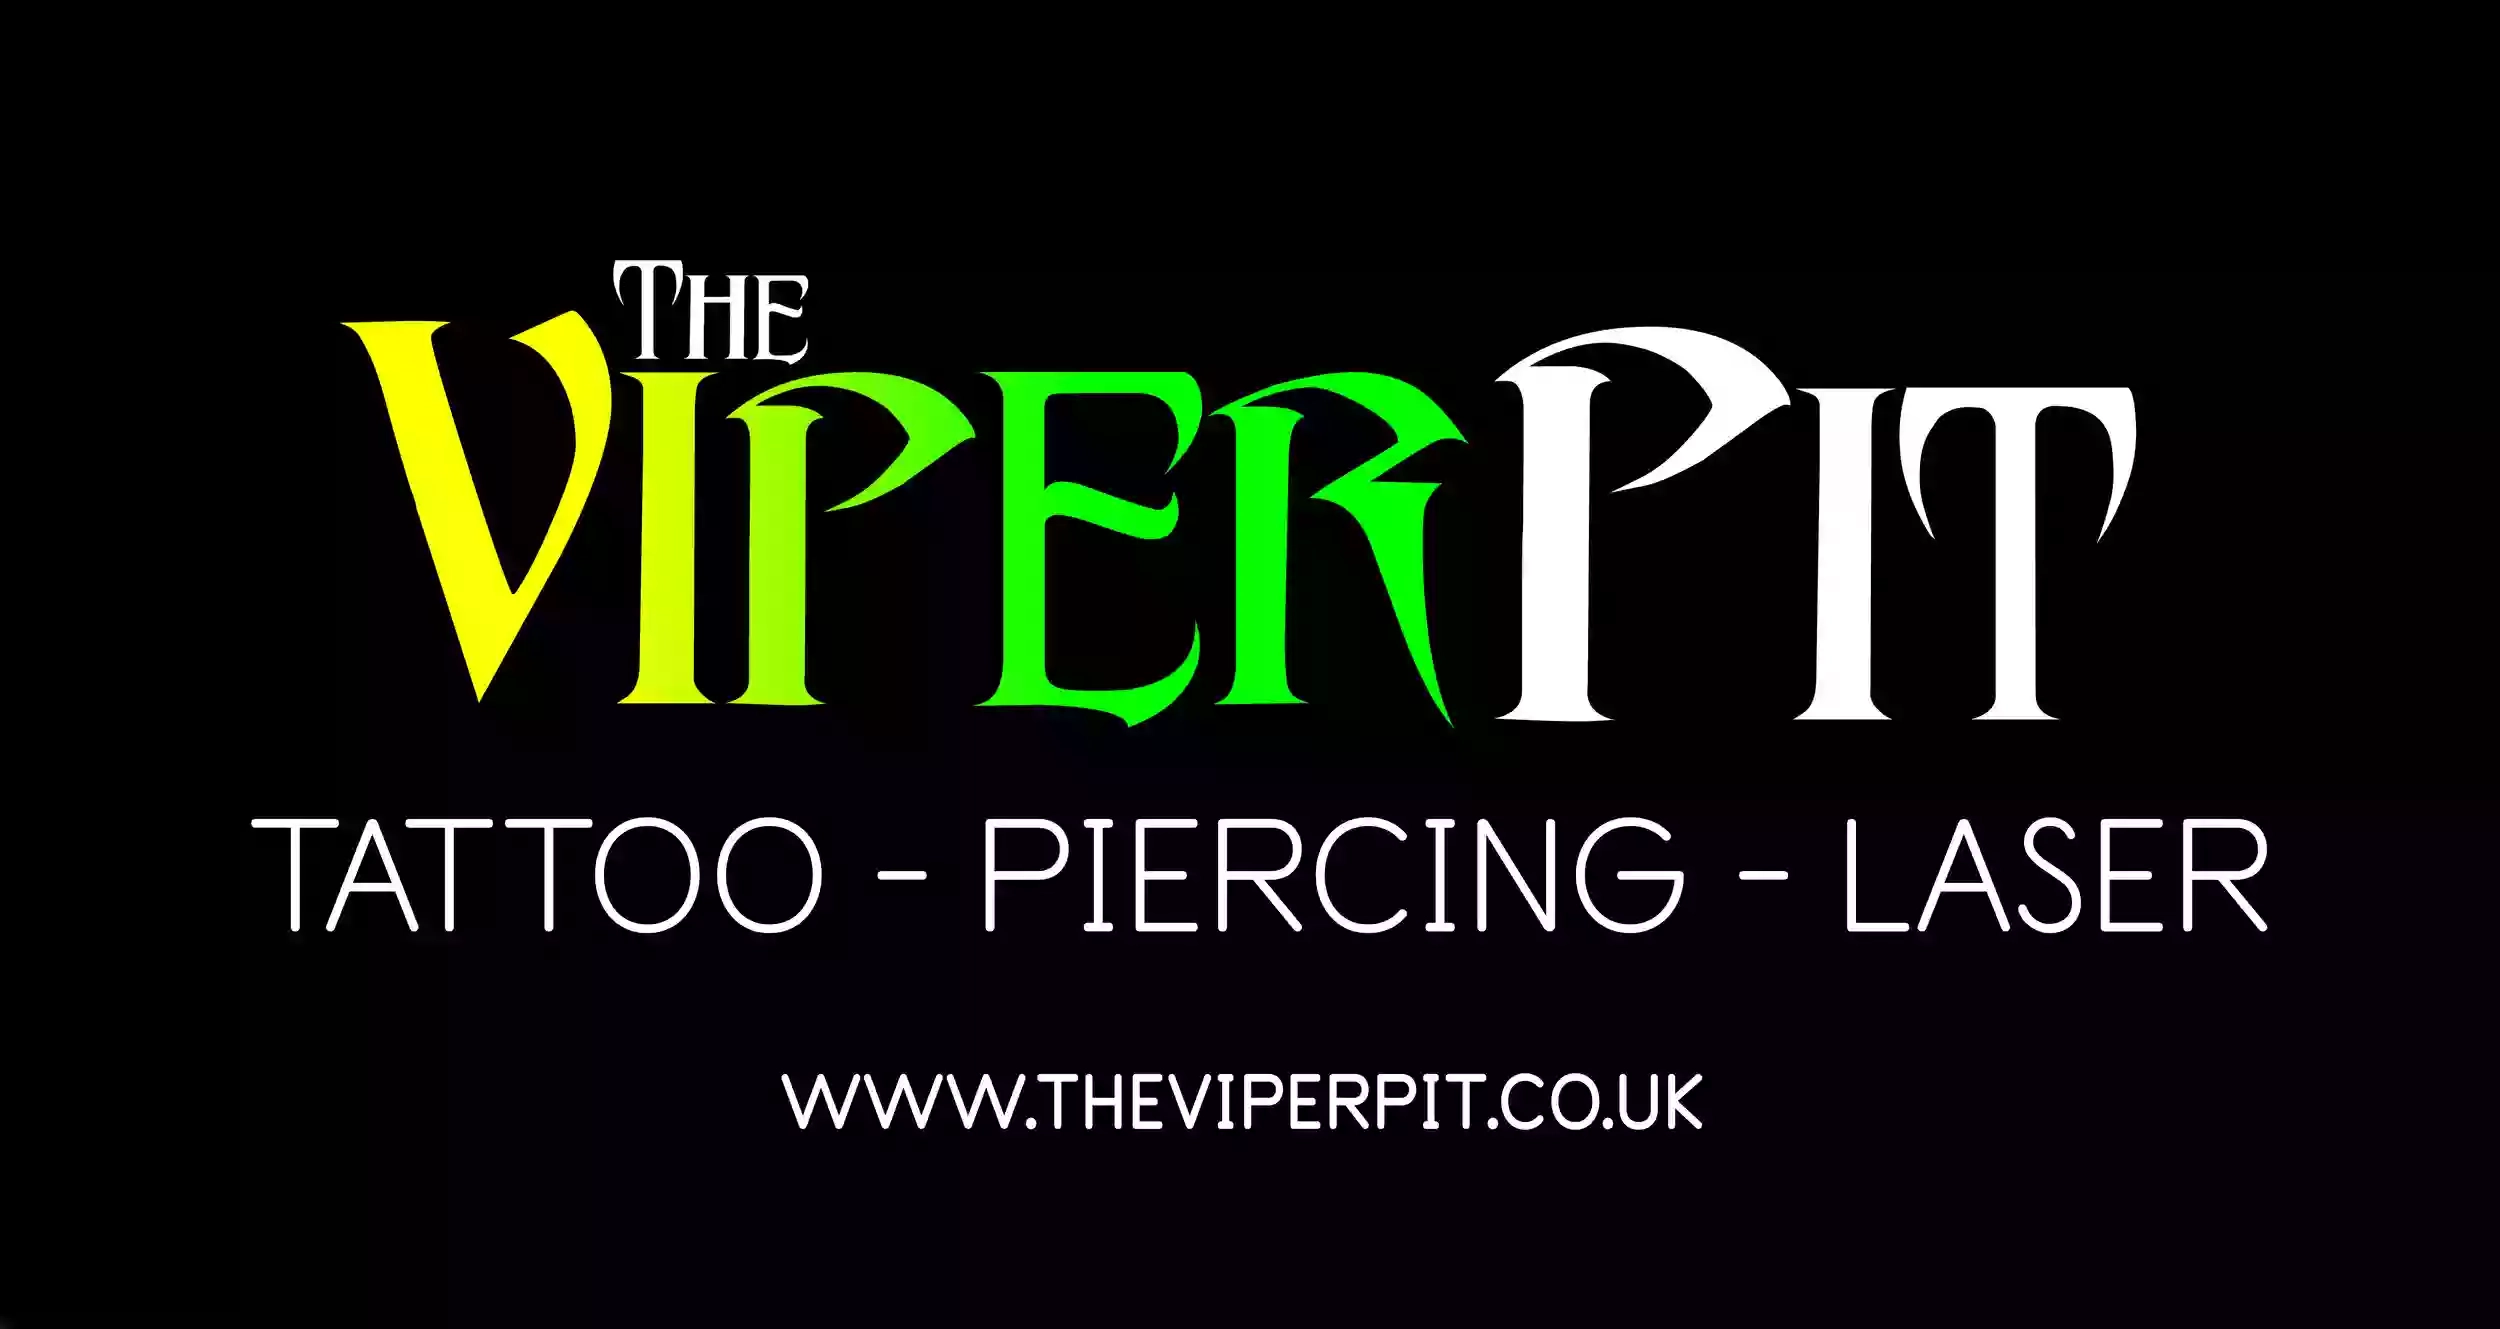 The Viper Pit Tattoo Studio and Piercing Ltd